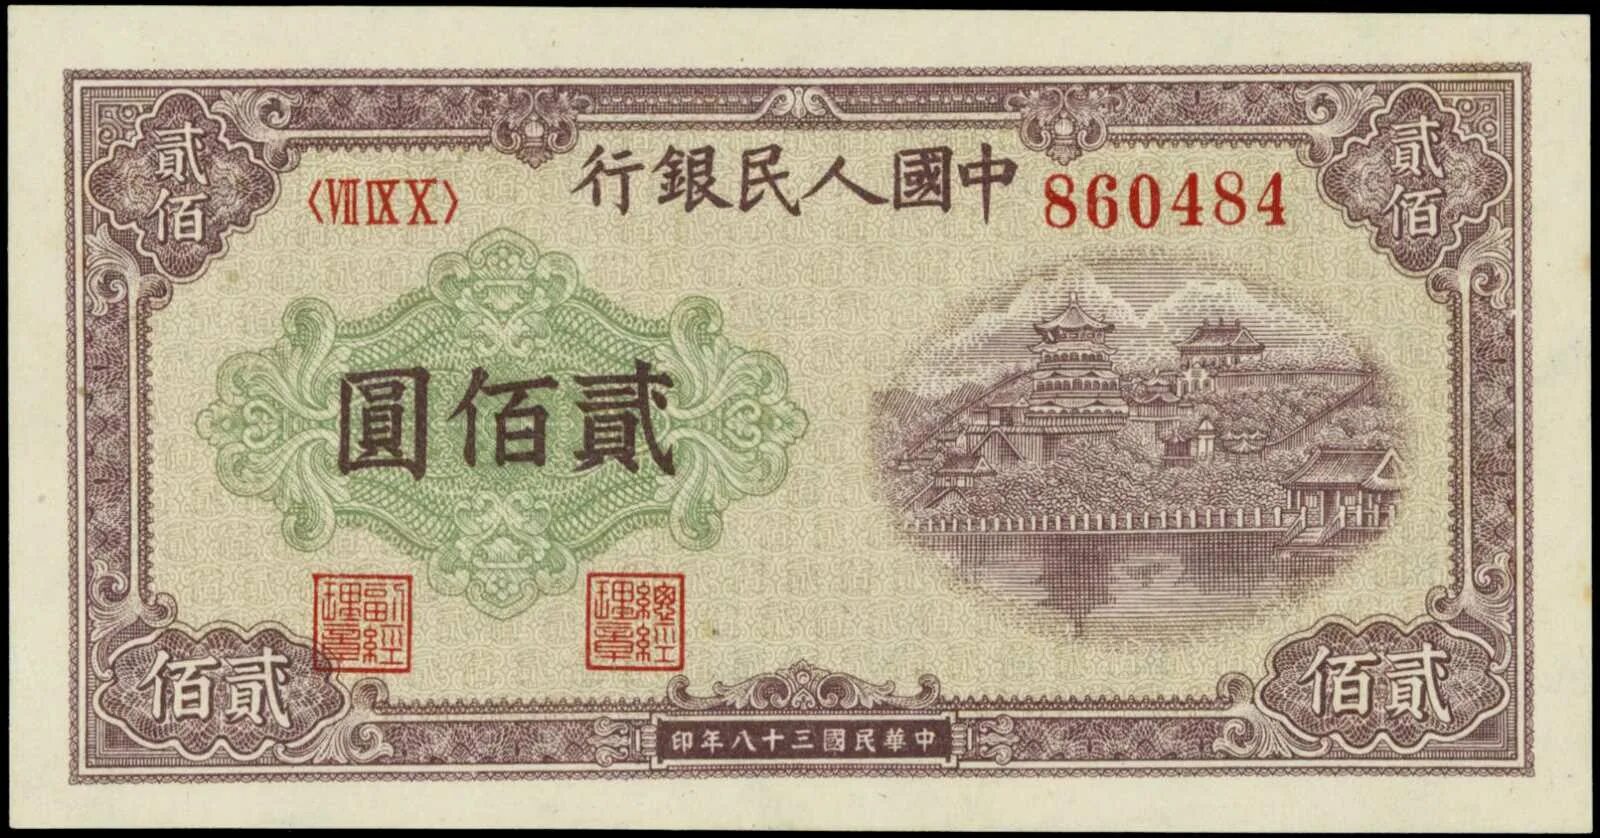 200 000 юаней. 1949 Юаней. Бона Китай 1949. 200 Yuan 1949 p-837. 200 Юаней 1949.